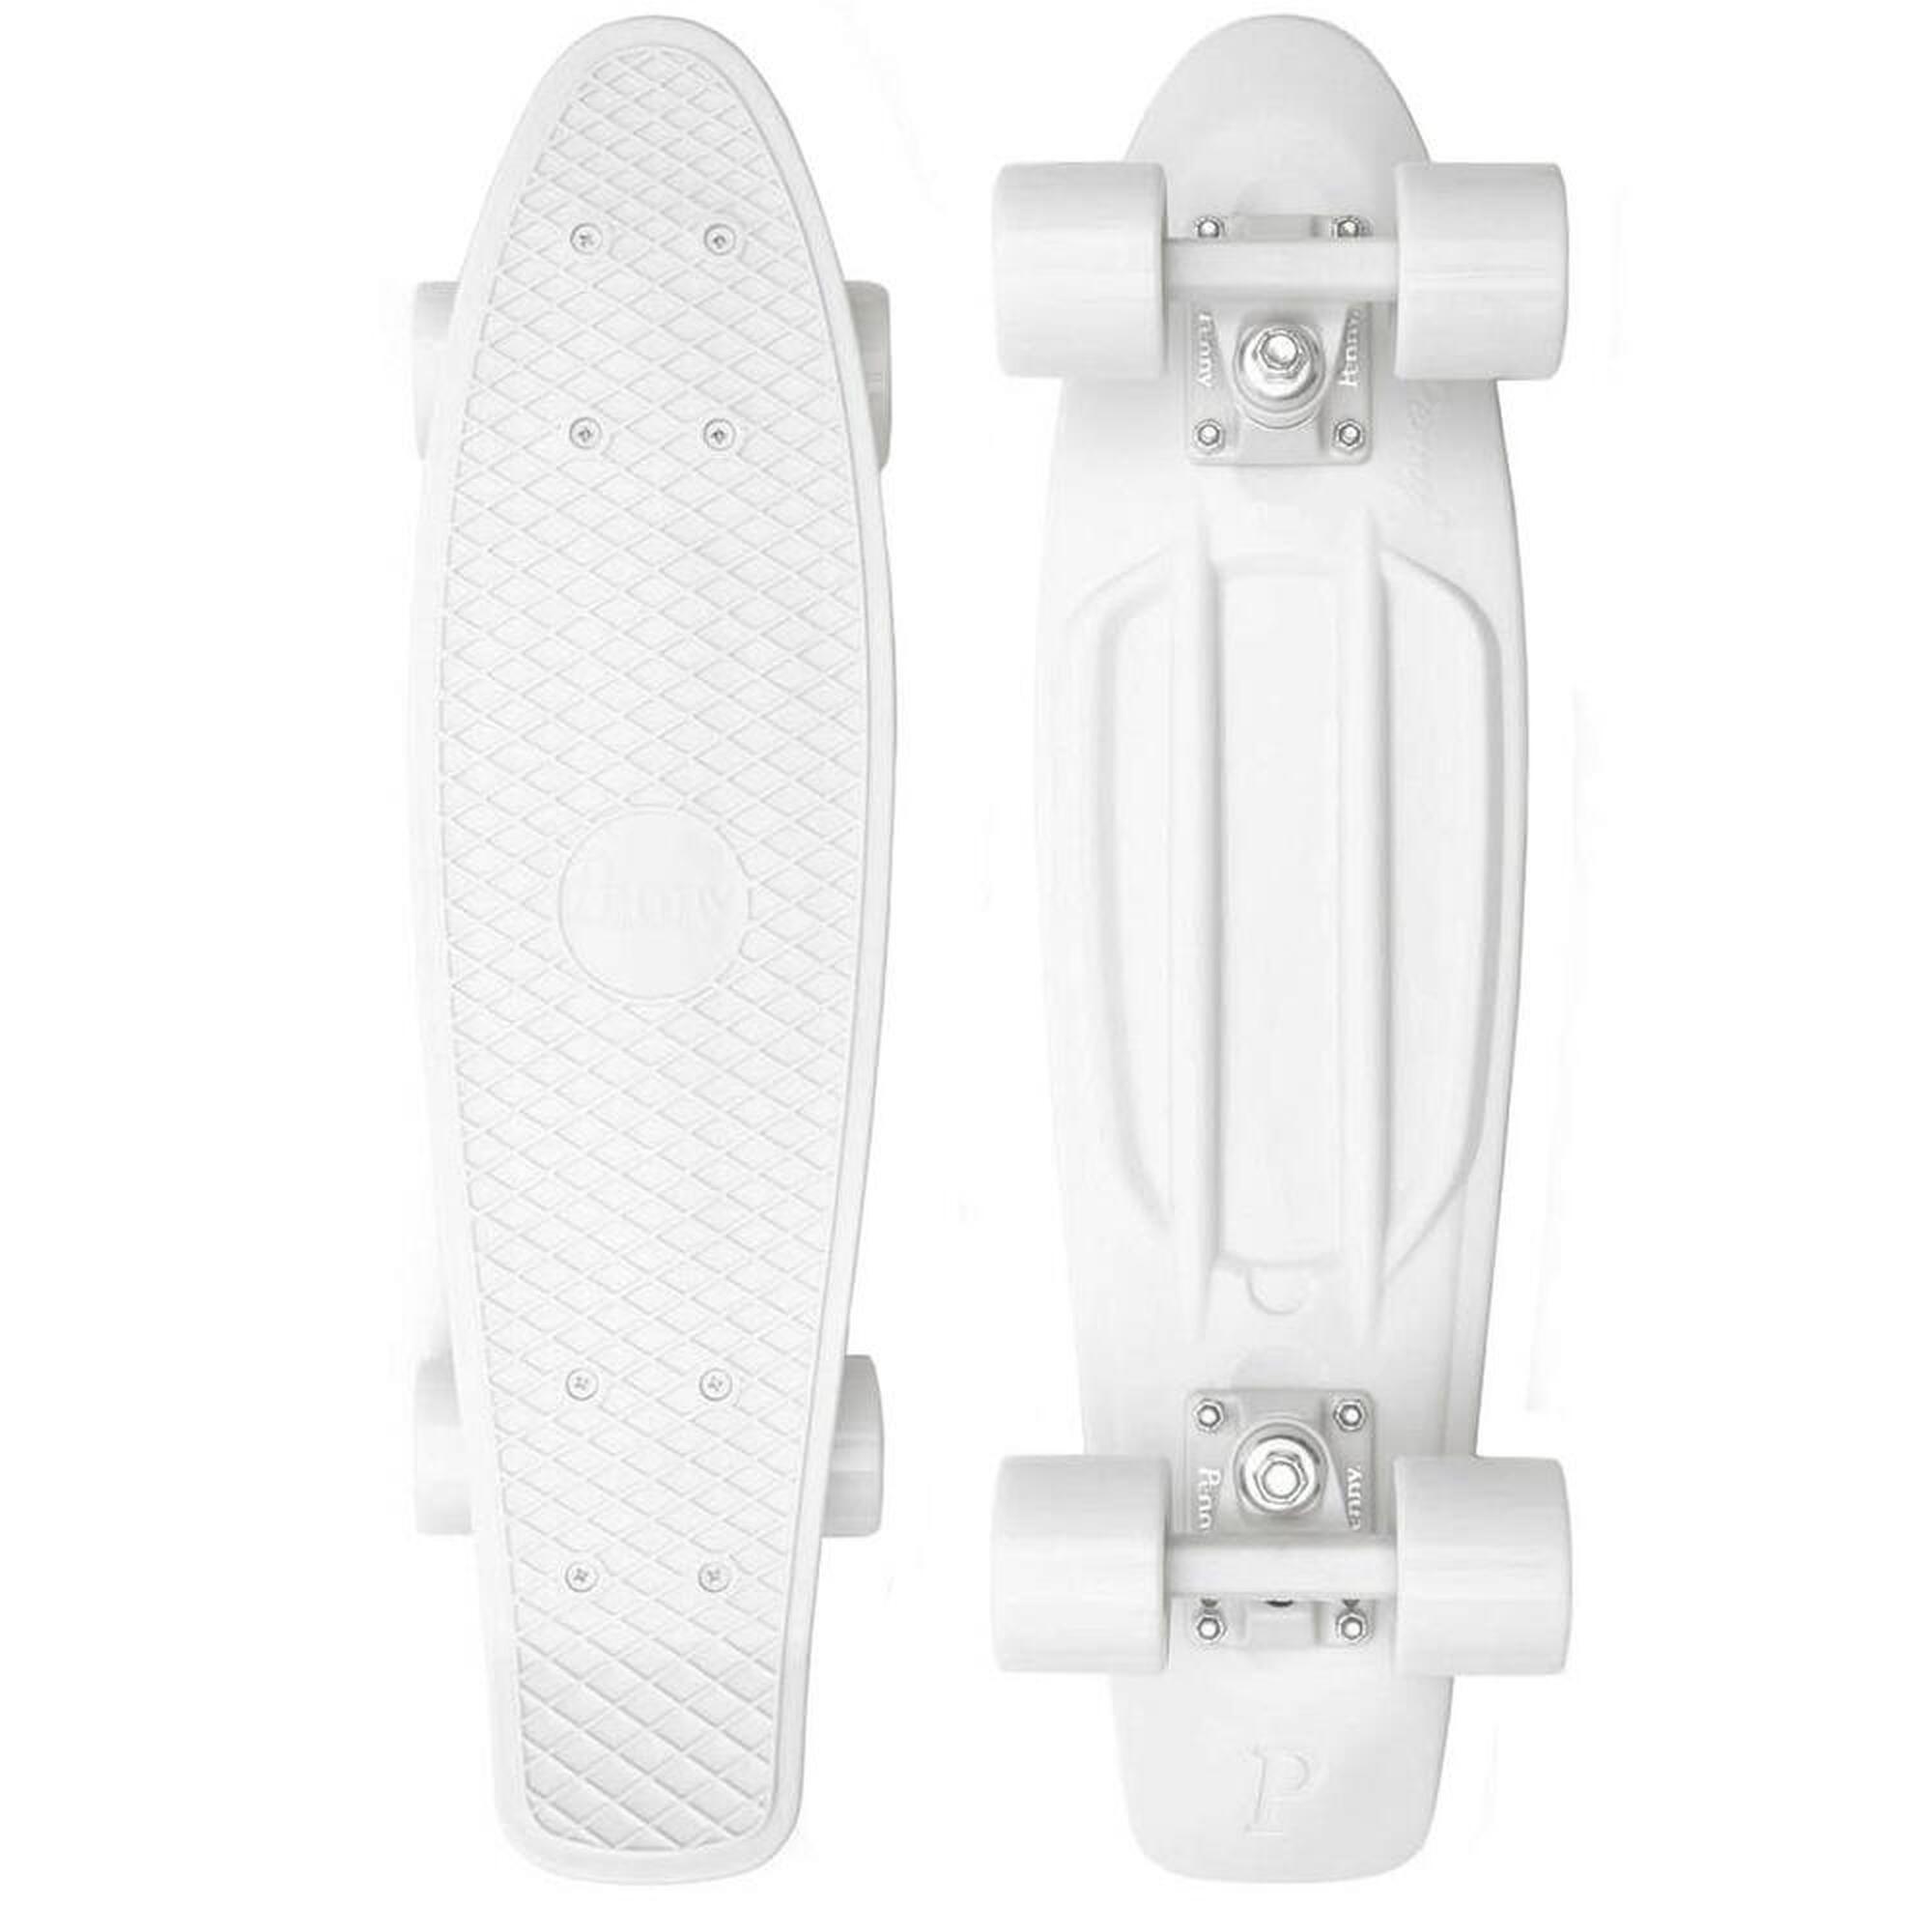 Complete 22inch OG Plastic Skateboard 1/7